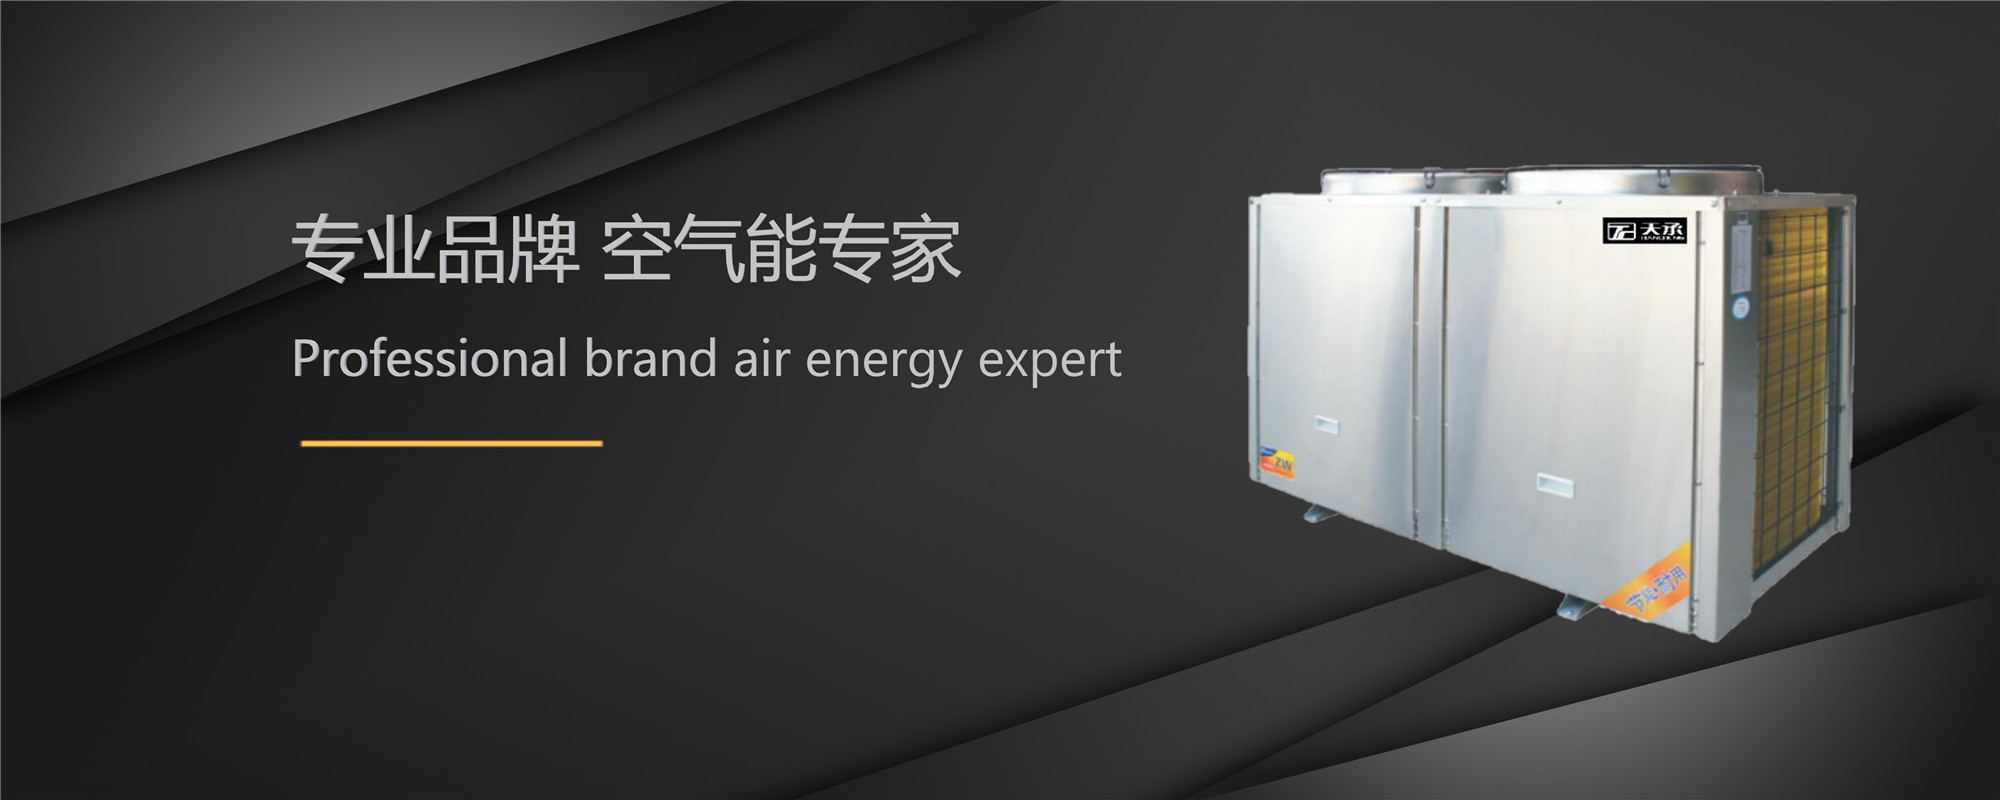 天承公司是主营搪瓷承压水箱、合肥空气能、承压式空气能热水器、承压水箱、空气能热水器等。 